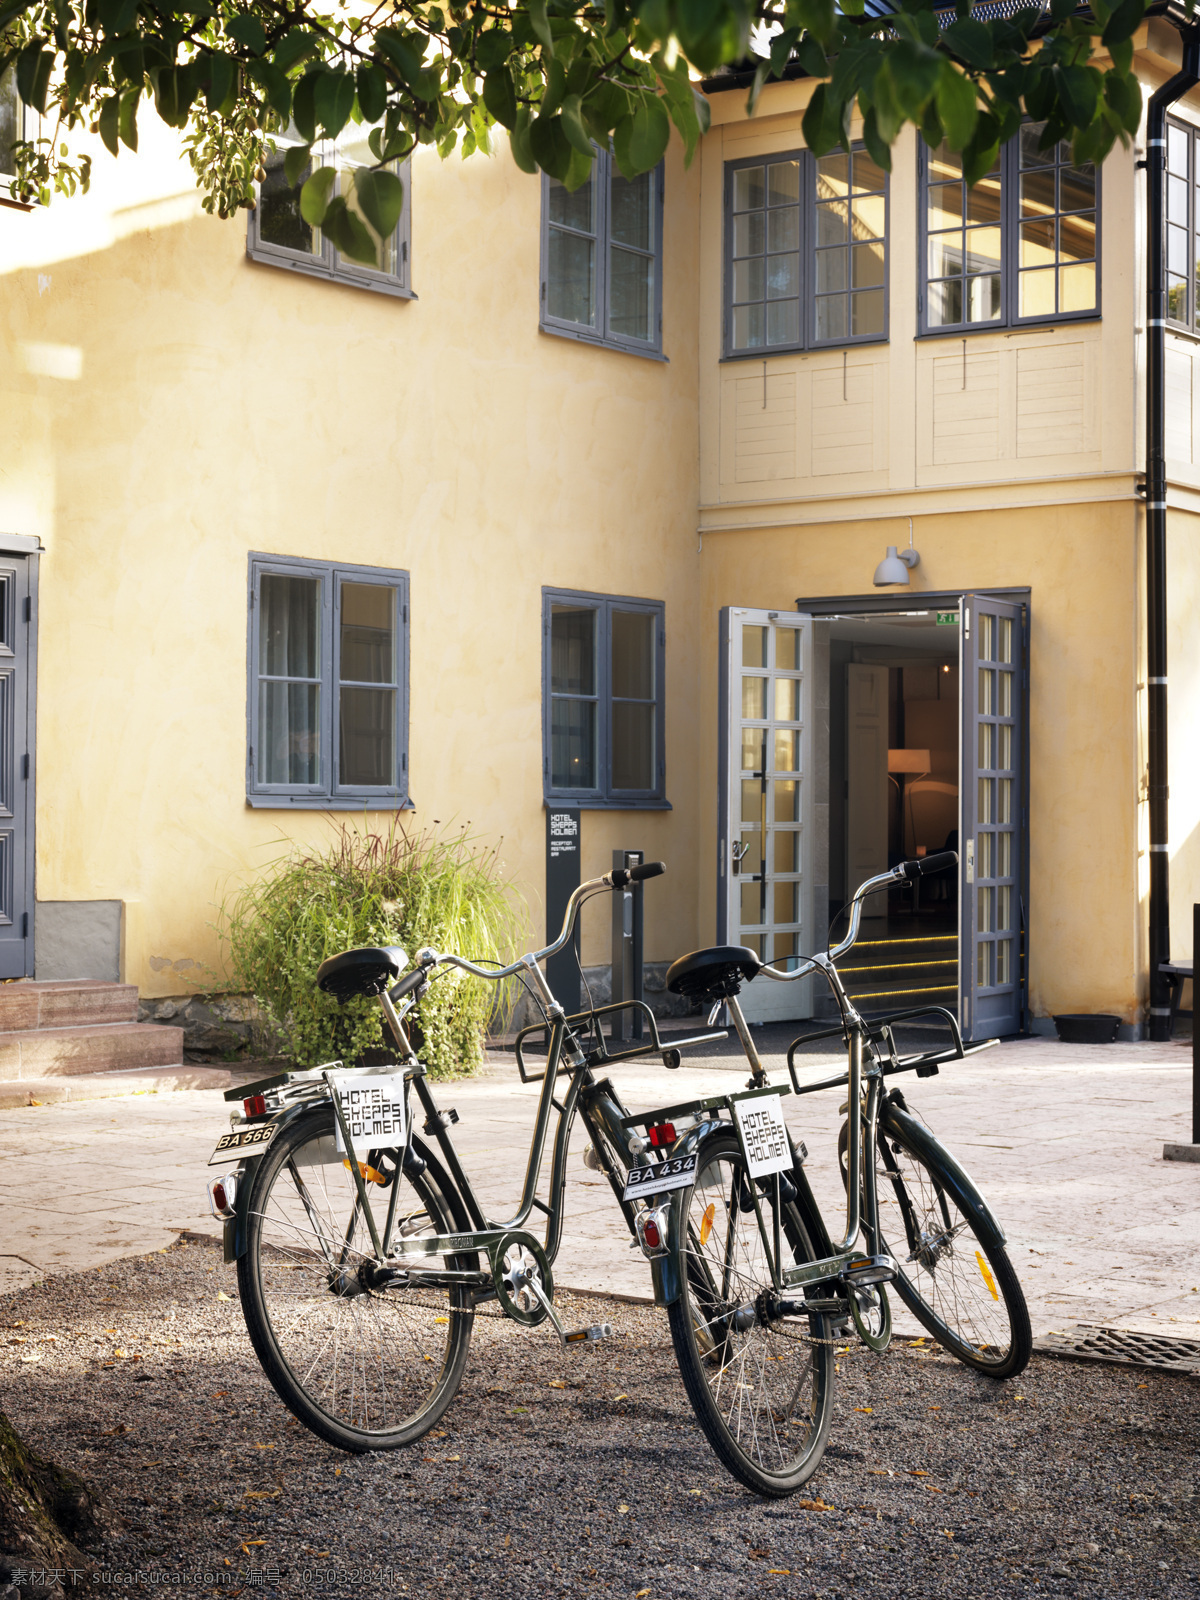 欧式 风格 自行车 房子 建筑 生活百科 生活素材 欧式自行车 家居装饰素材